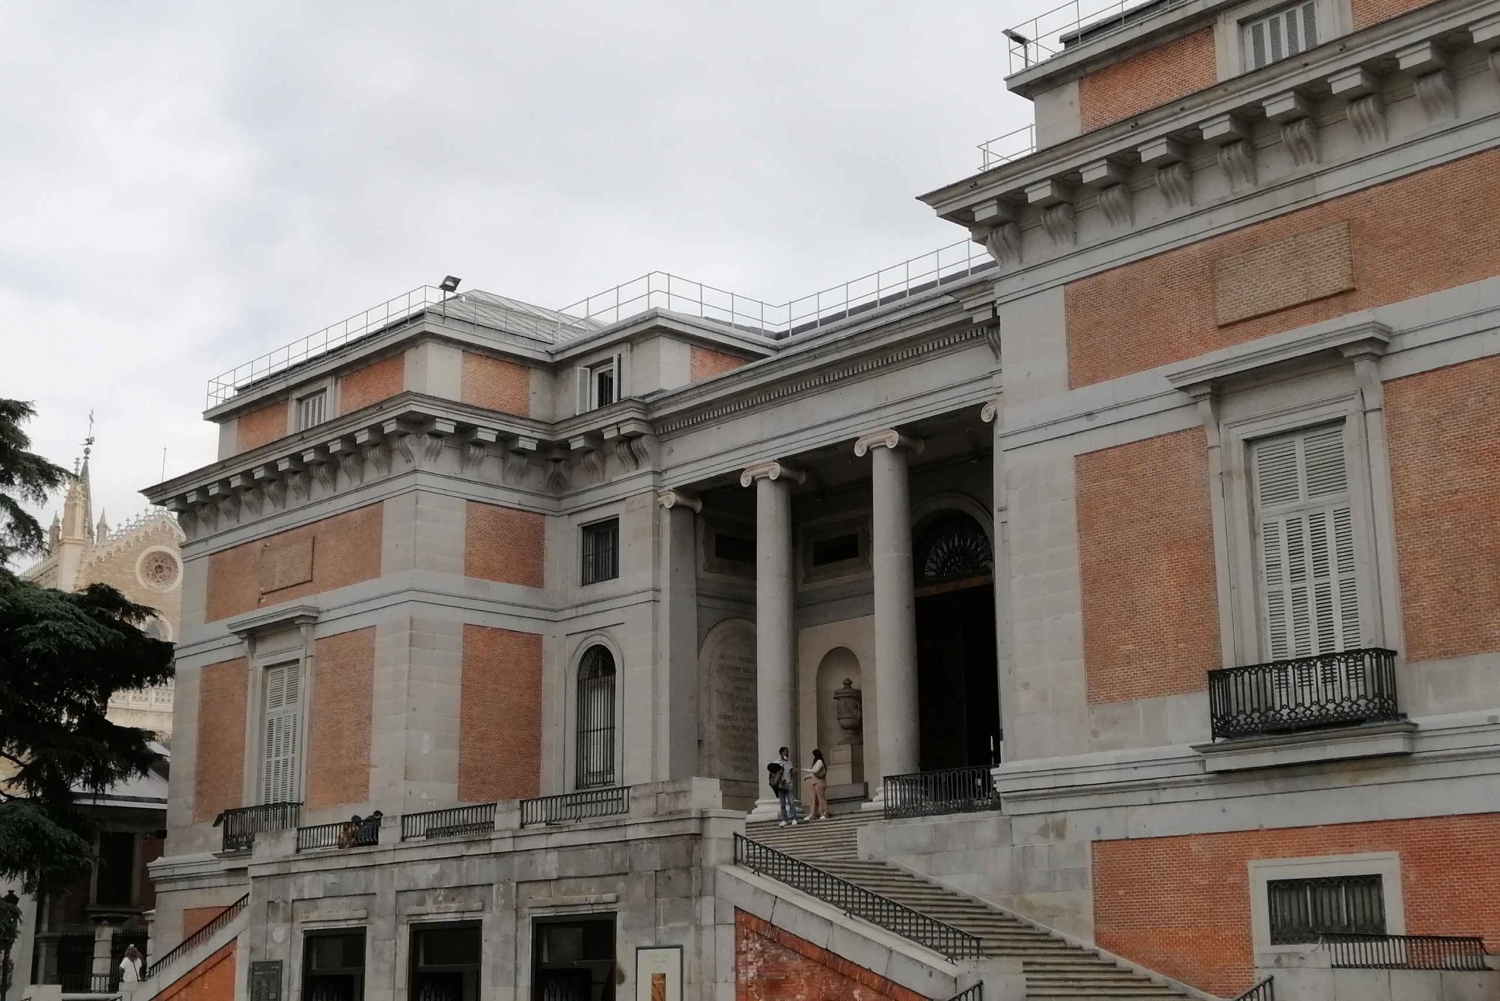 Madryt: piesza wycieczka po parku Retiro z biletem do Muzeum Prado